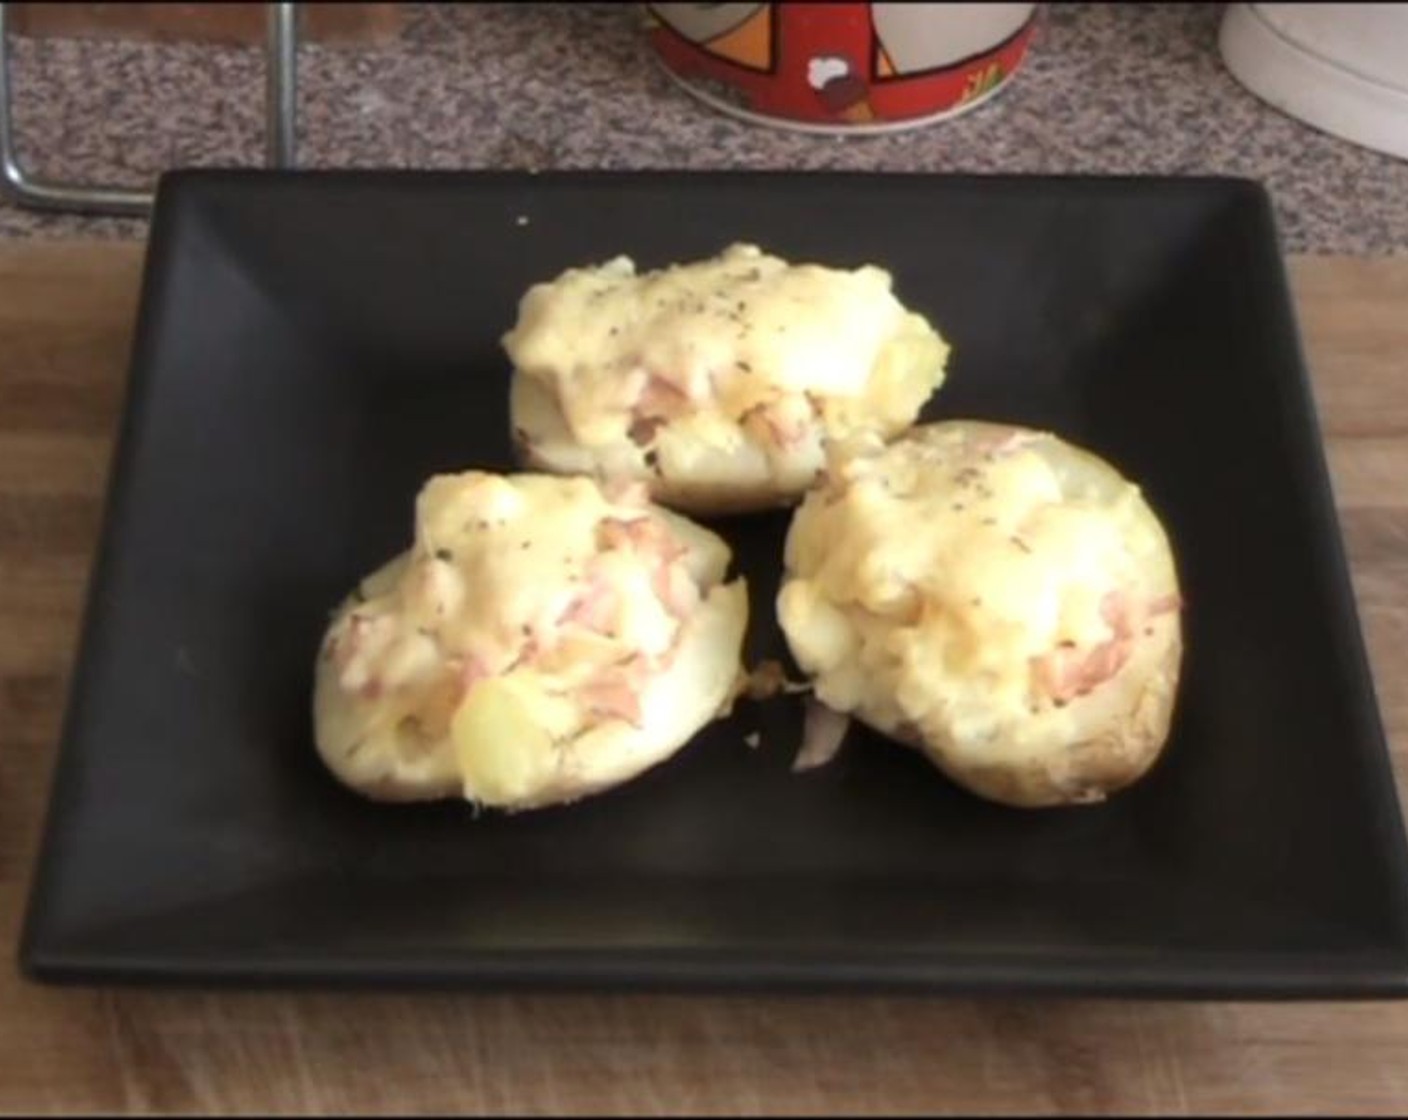 Double Baked Stuffed Potatoes